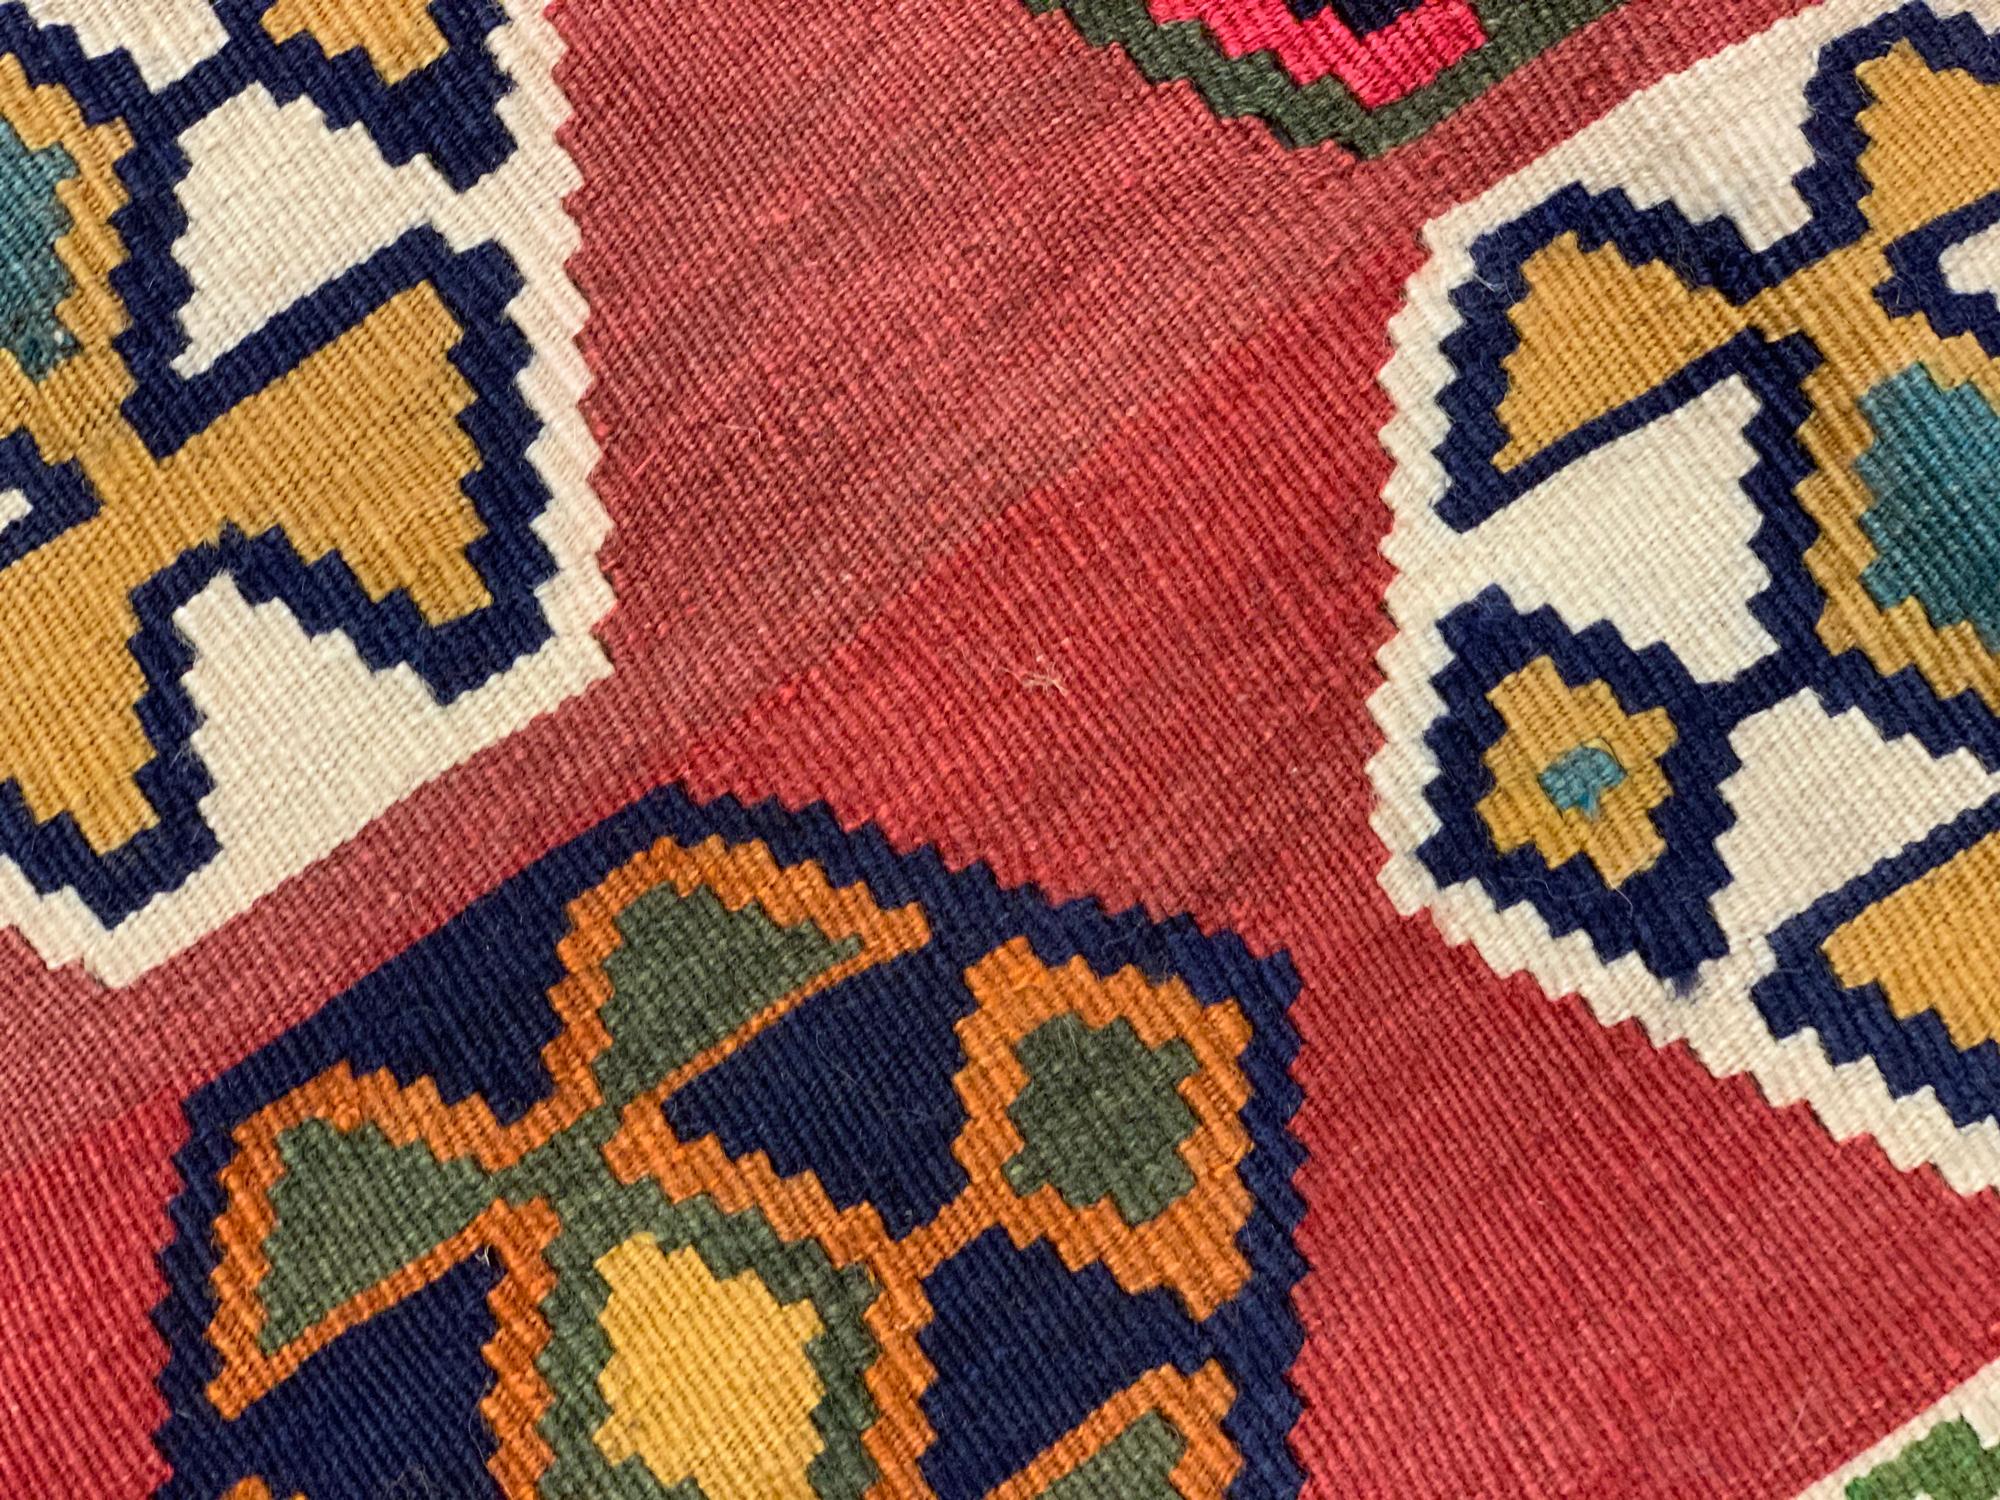 Hand-Woven Antique Kilim Rugs for Sale Caucasian Kilims Carpet  For Sale